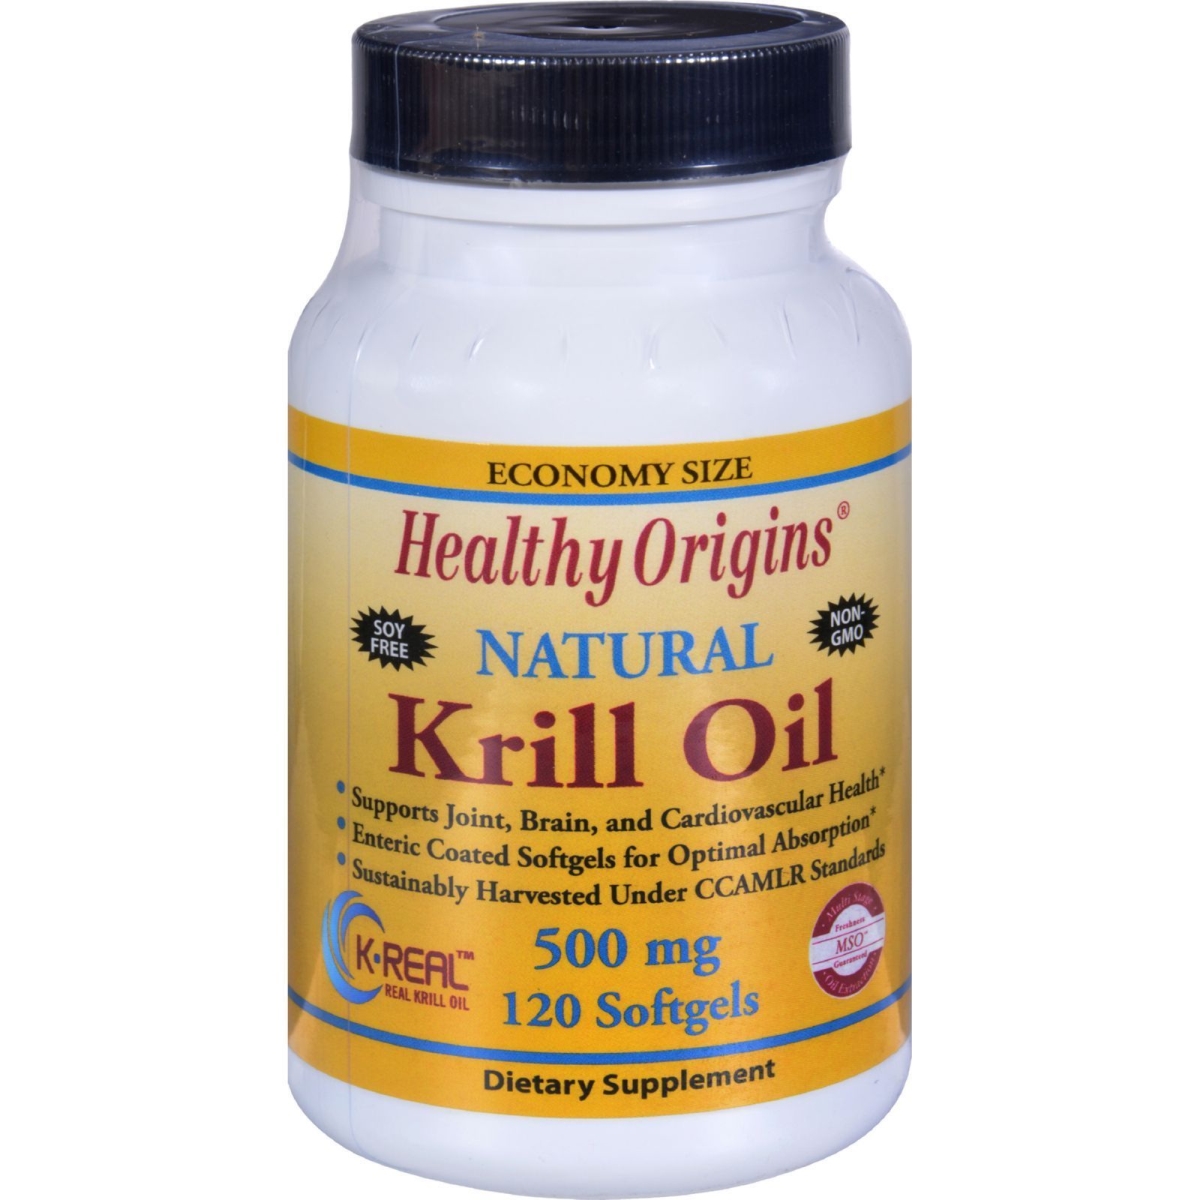 Hg1352376 500 Mg Krill Oil - 120 Softgels